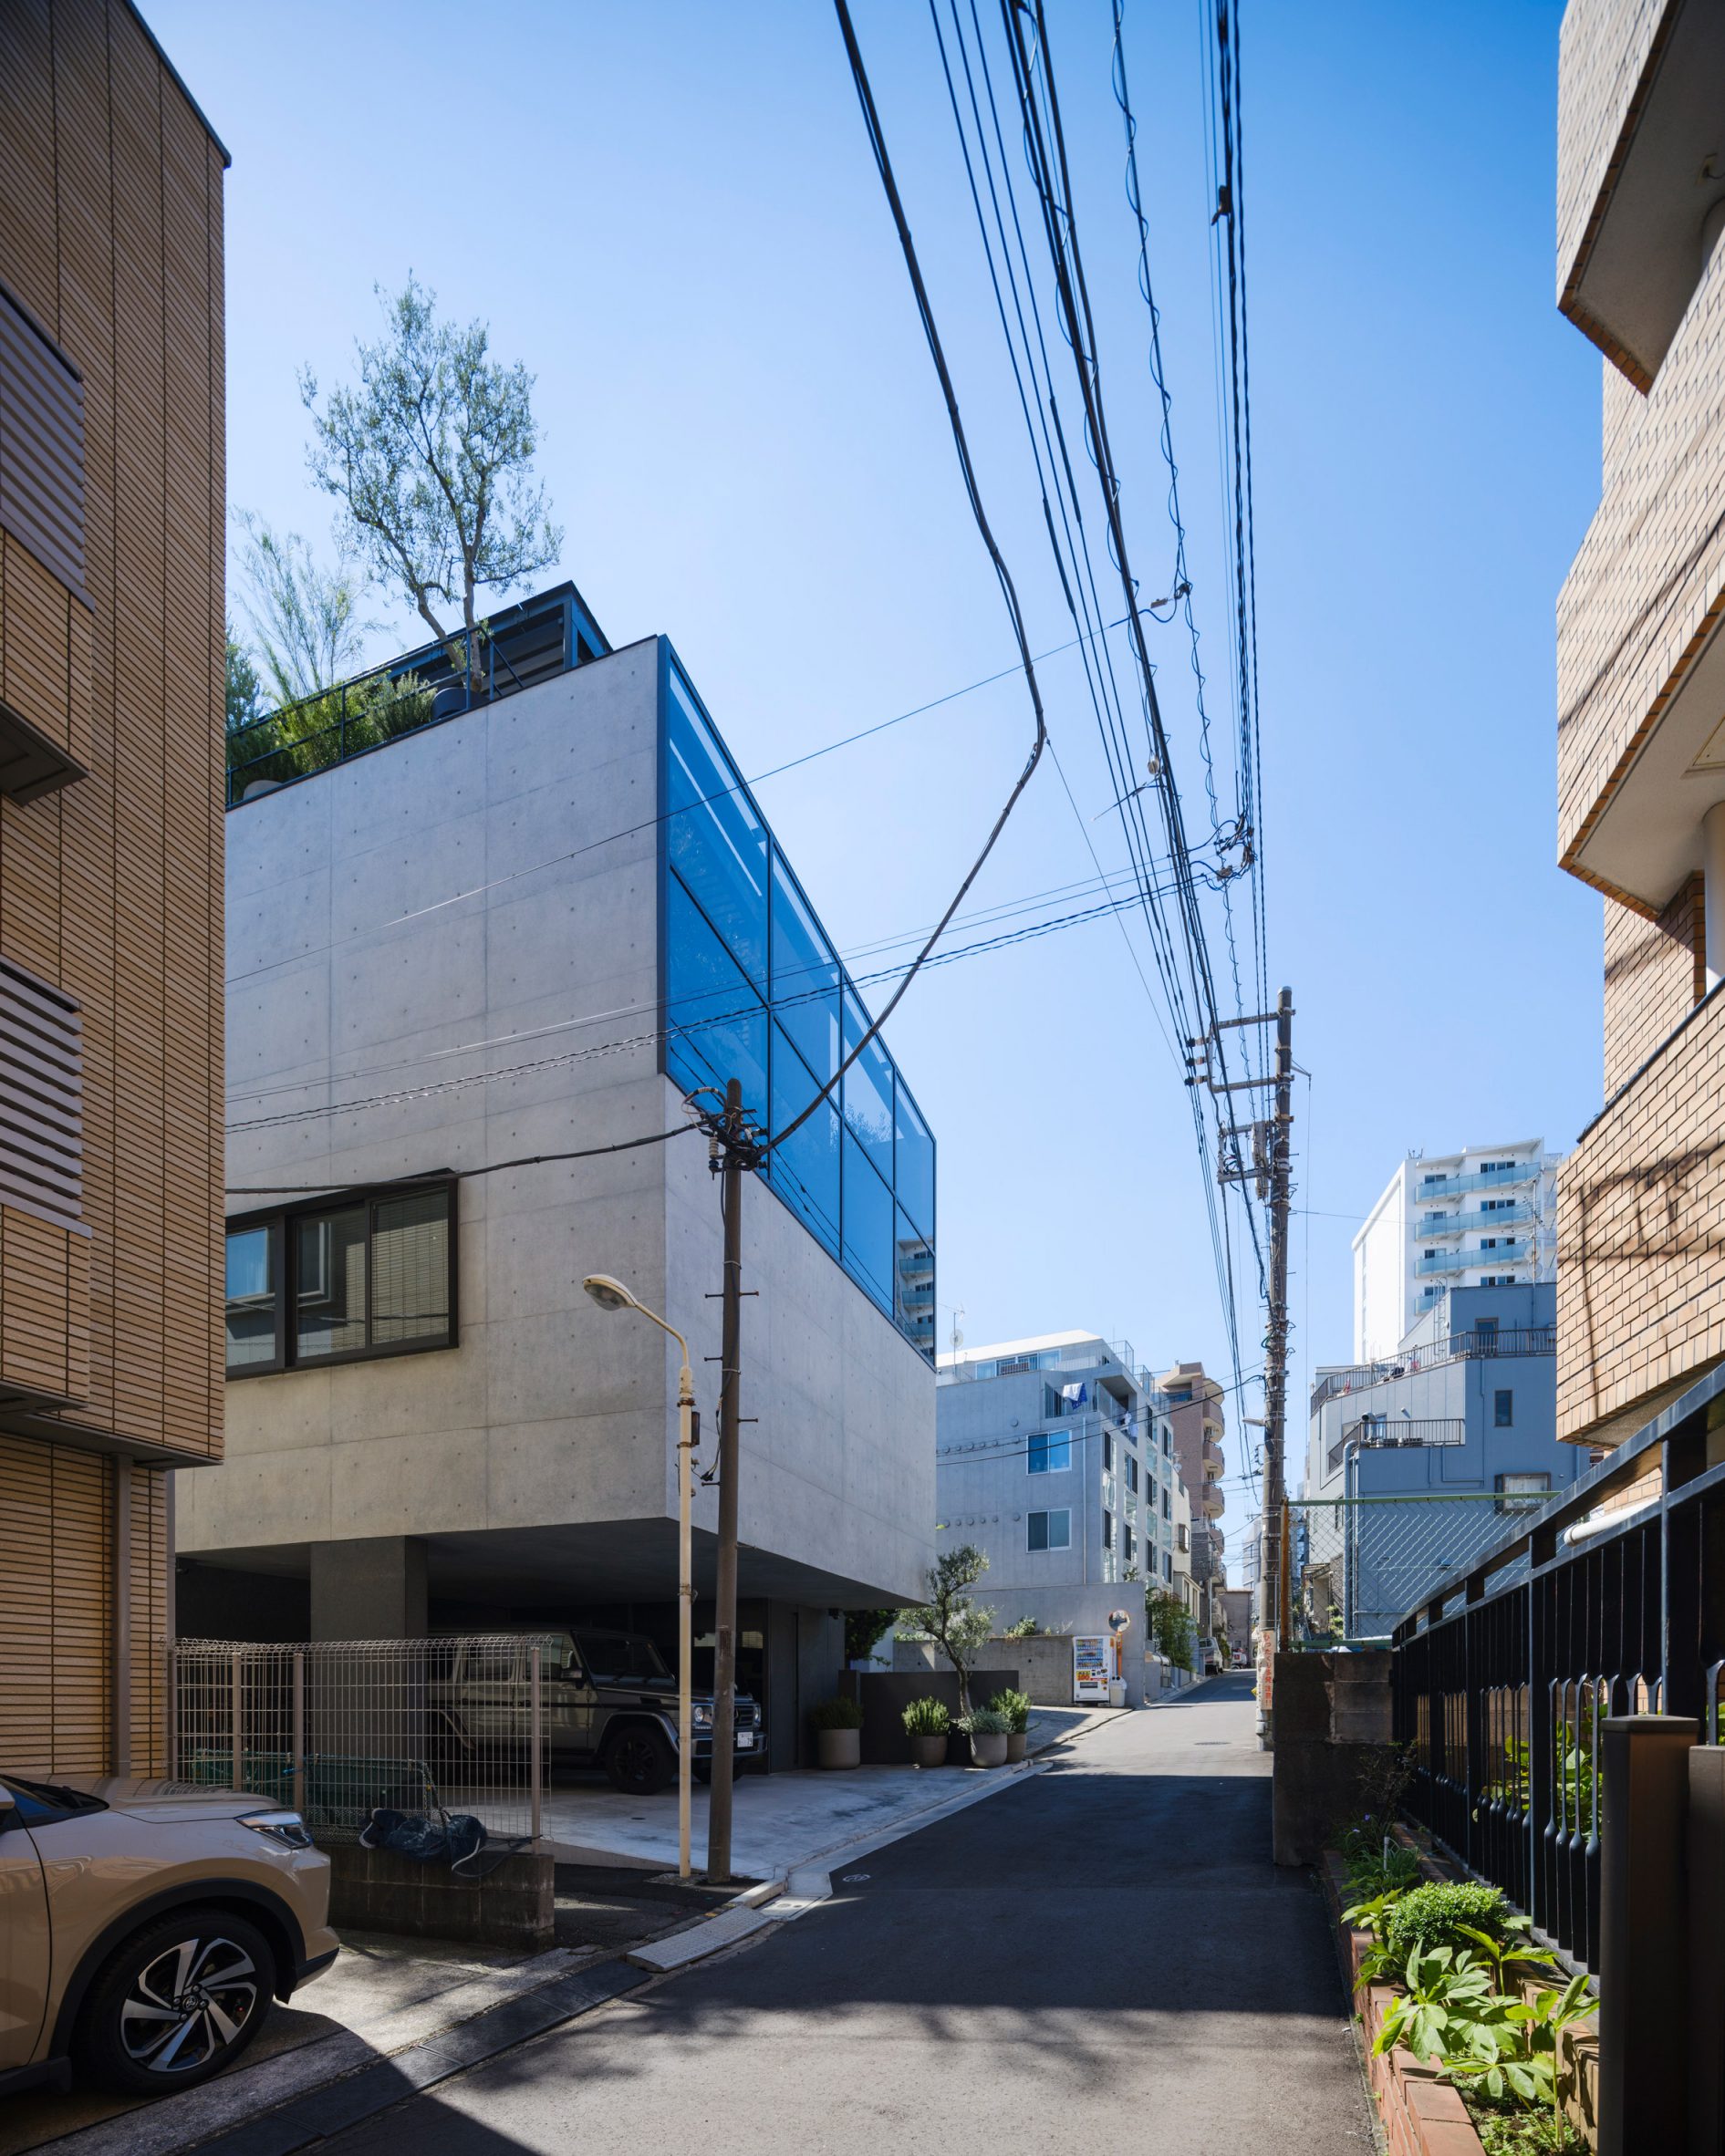 Residential street in Tokyo